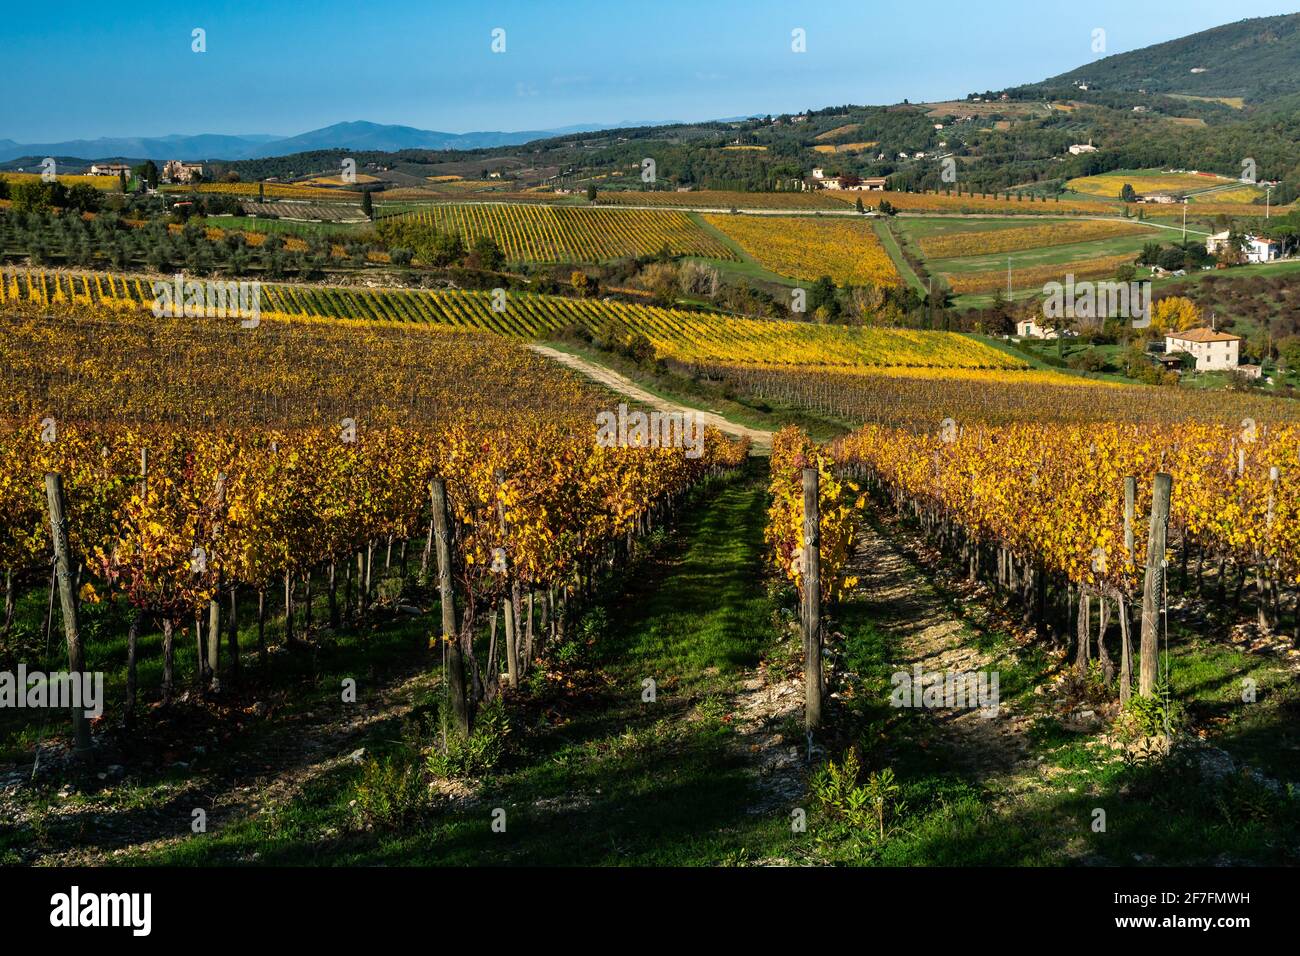 Vignes aux couleurs automnales contre un ciel spectaculaire avec des oliviers derrière, Greve in Chianti, Toscane, Italie, Europe Banque D'Images